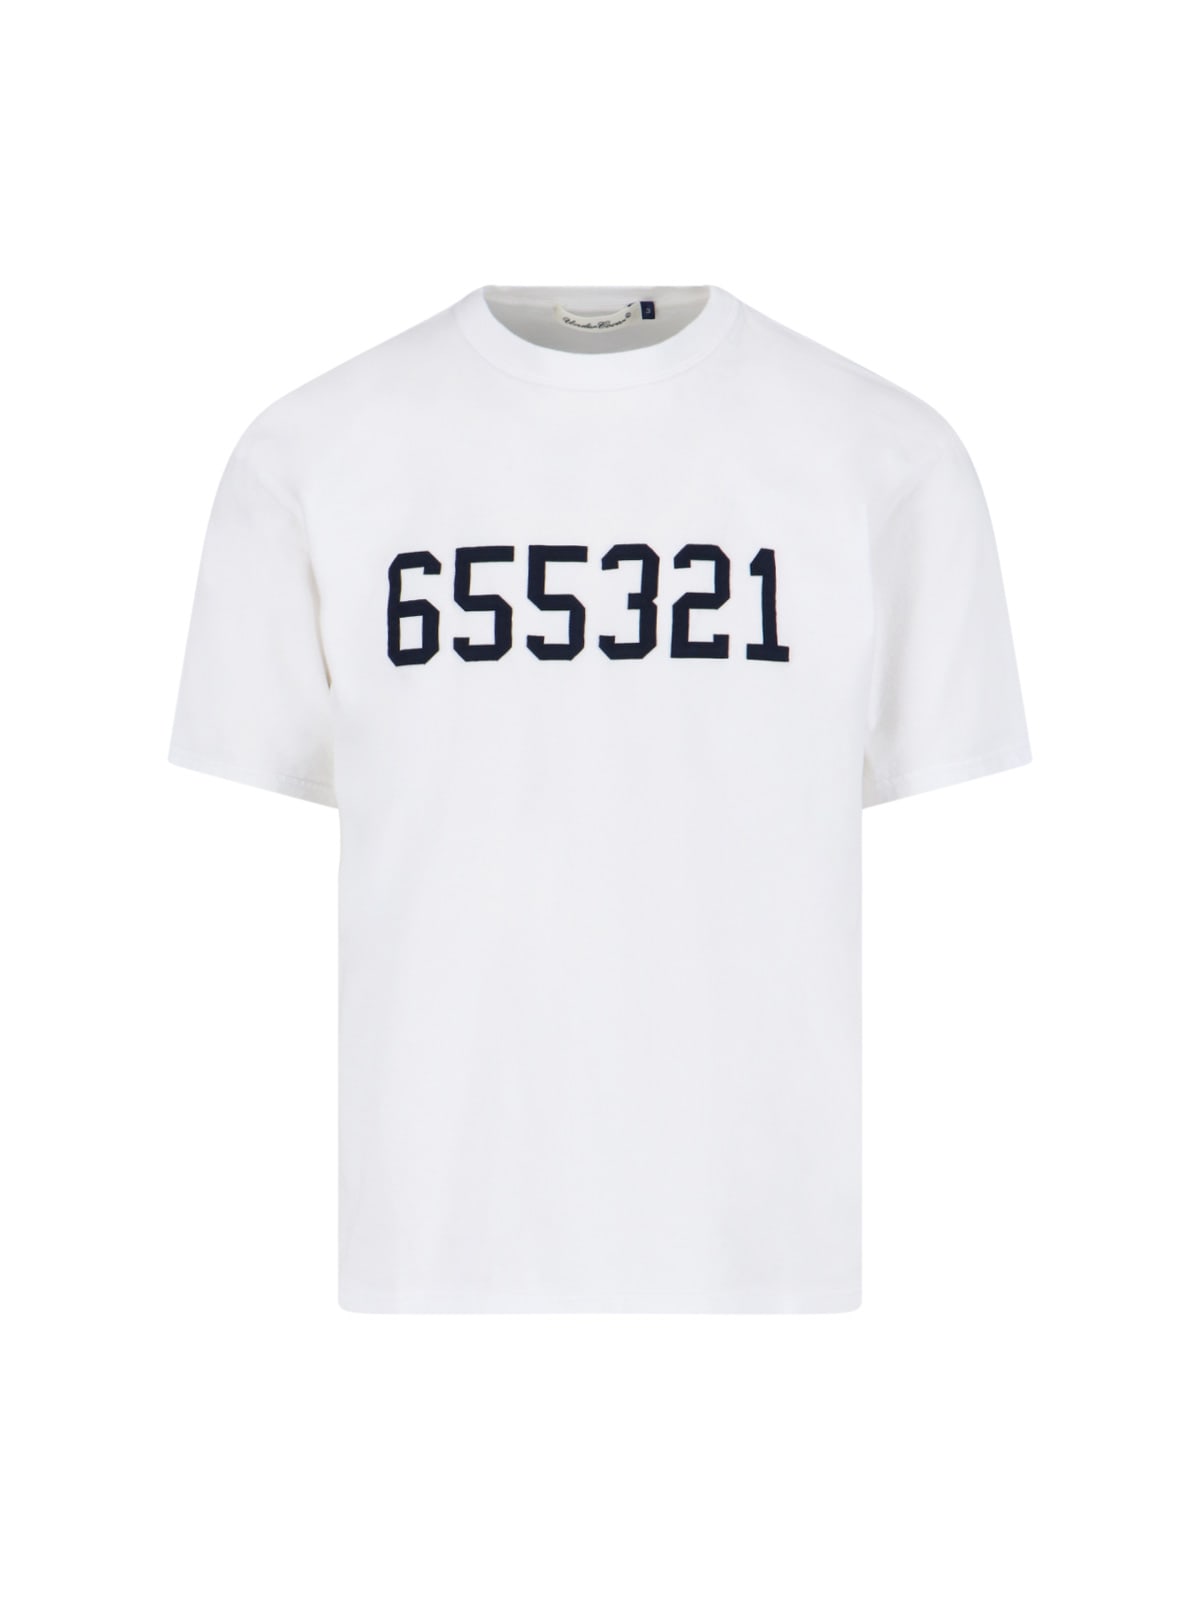 655321 T-shirt